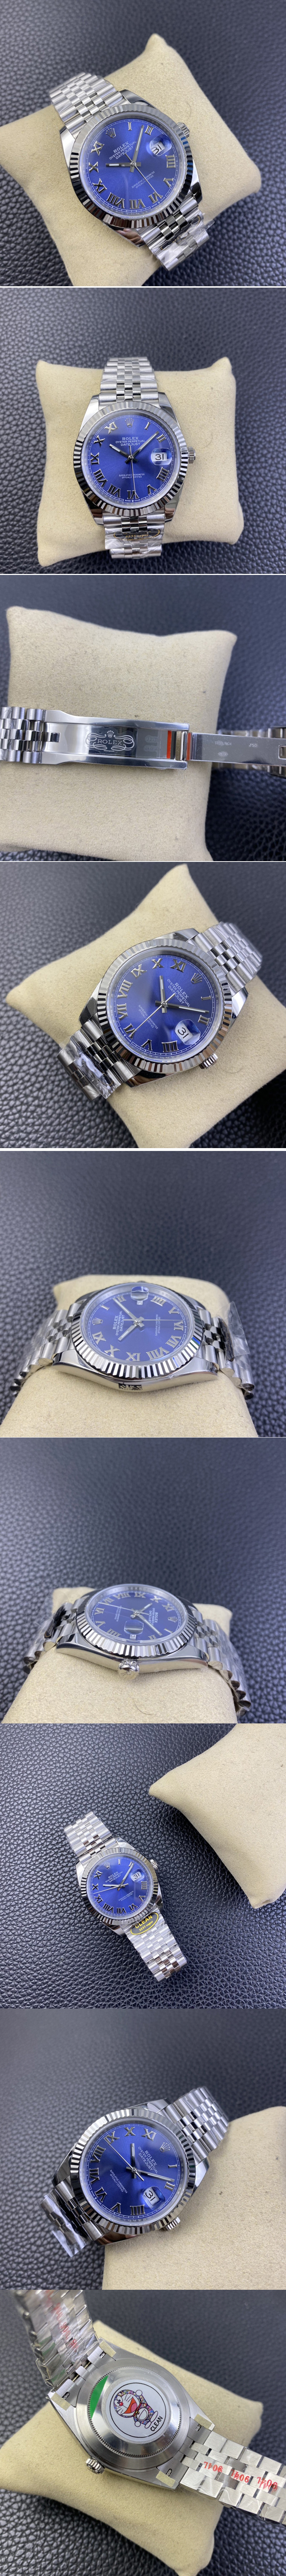 Replica Rolex Datejust 41 SS 904L Steel Clean 1:1 Best Edition Blue Roman Dial on Jubilee Bracelet VR3235